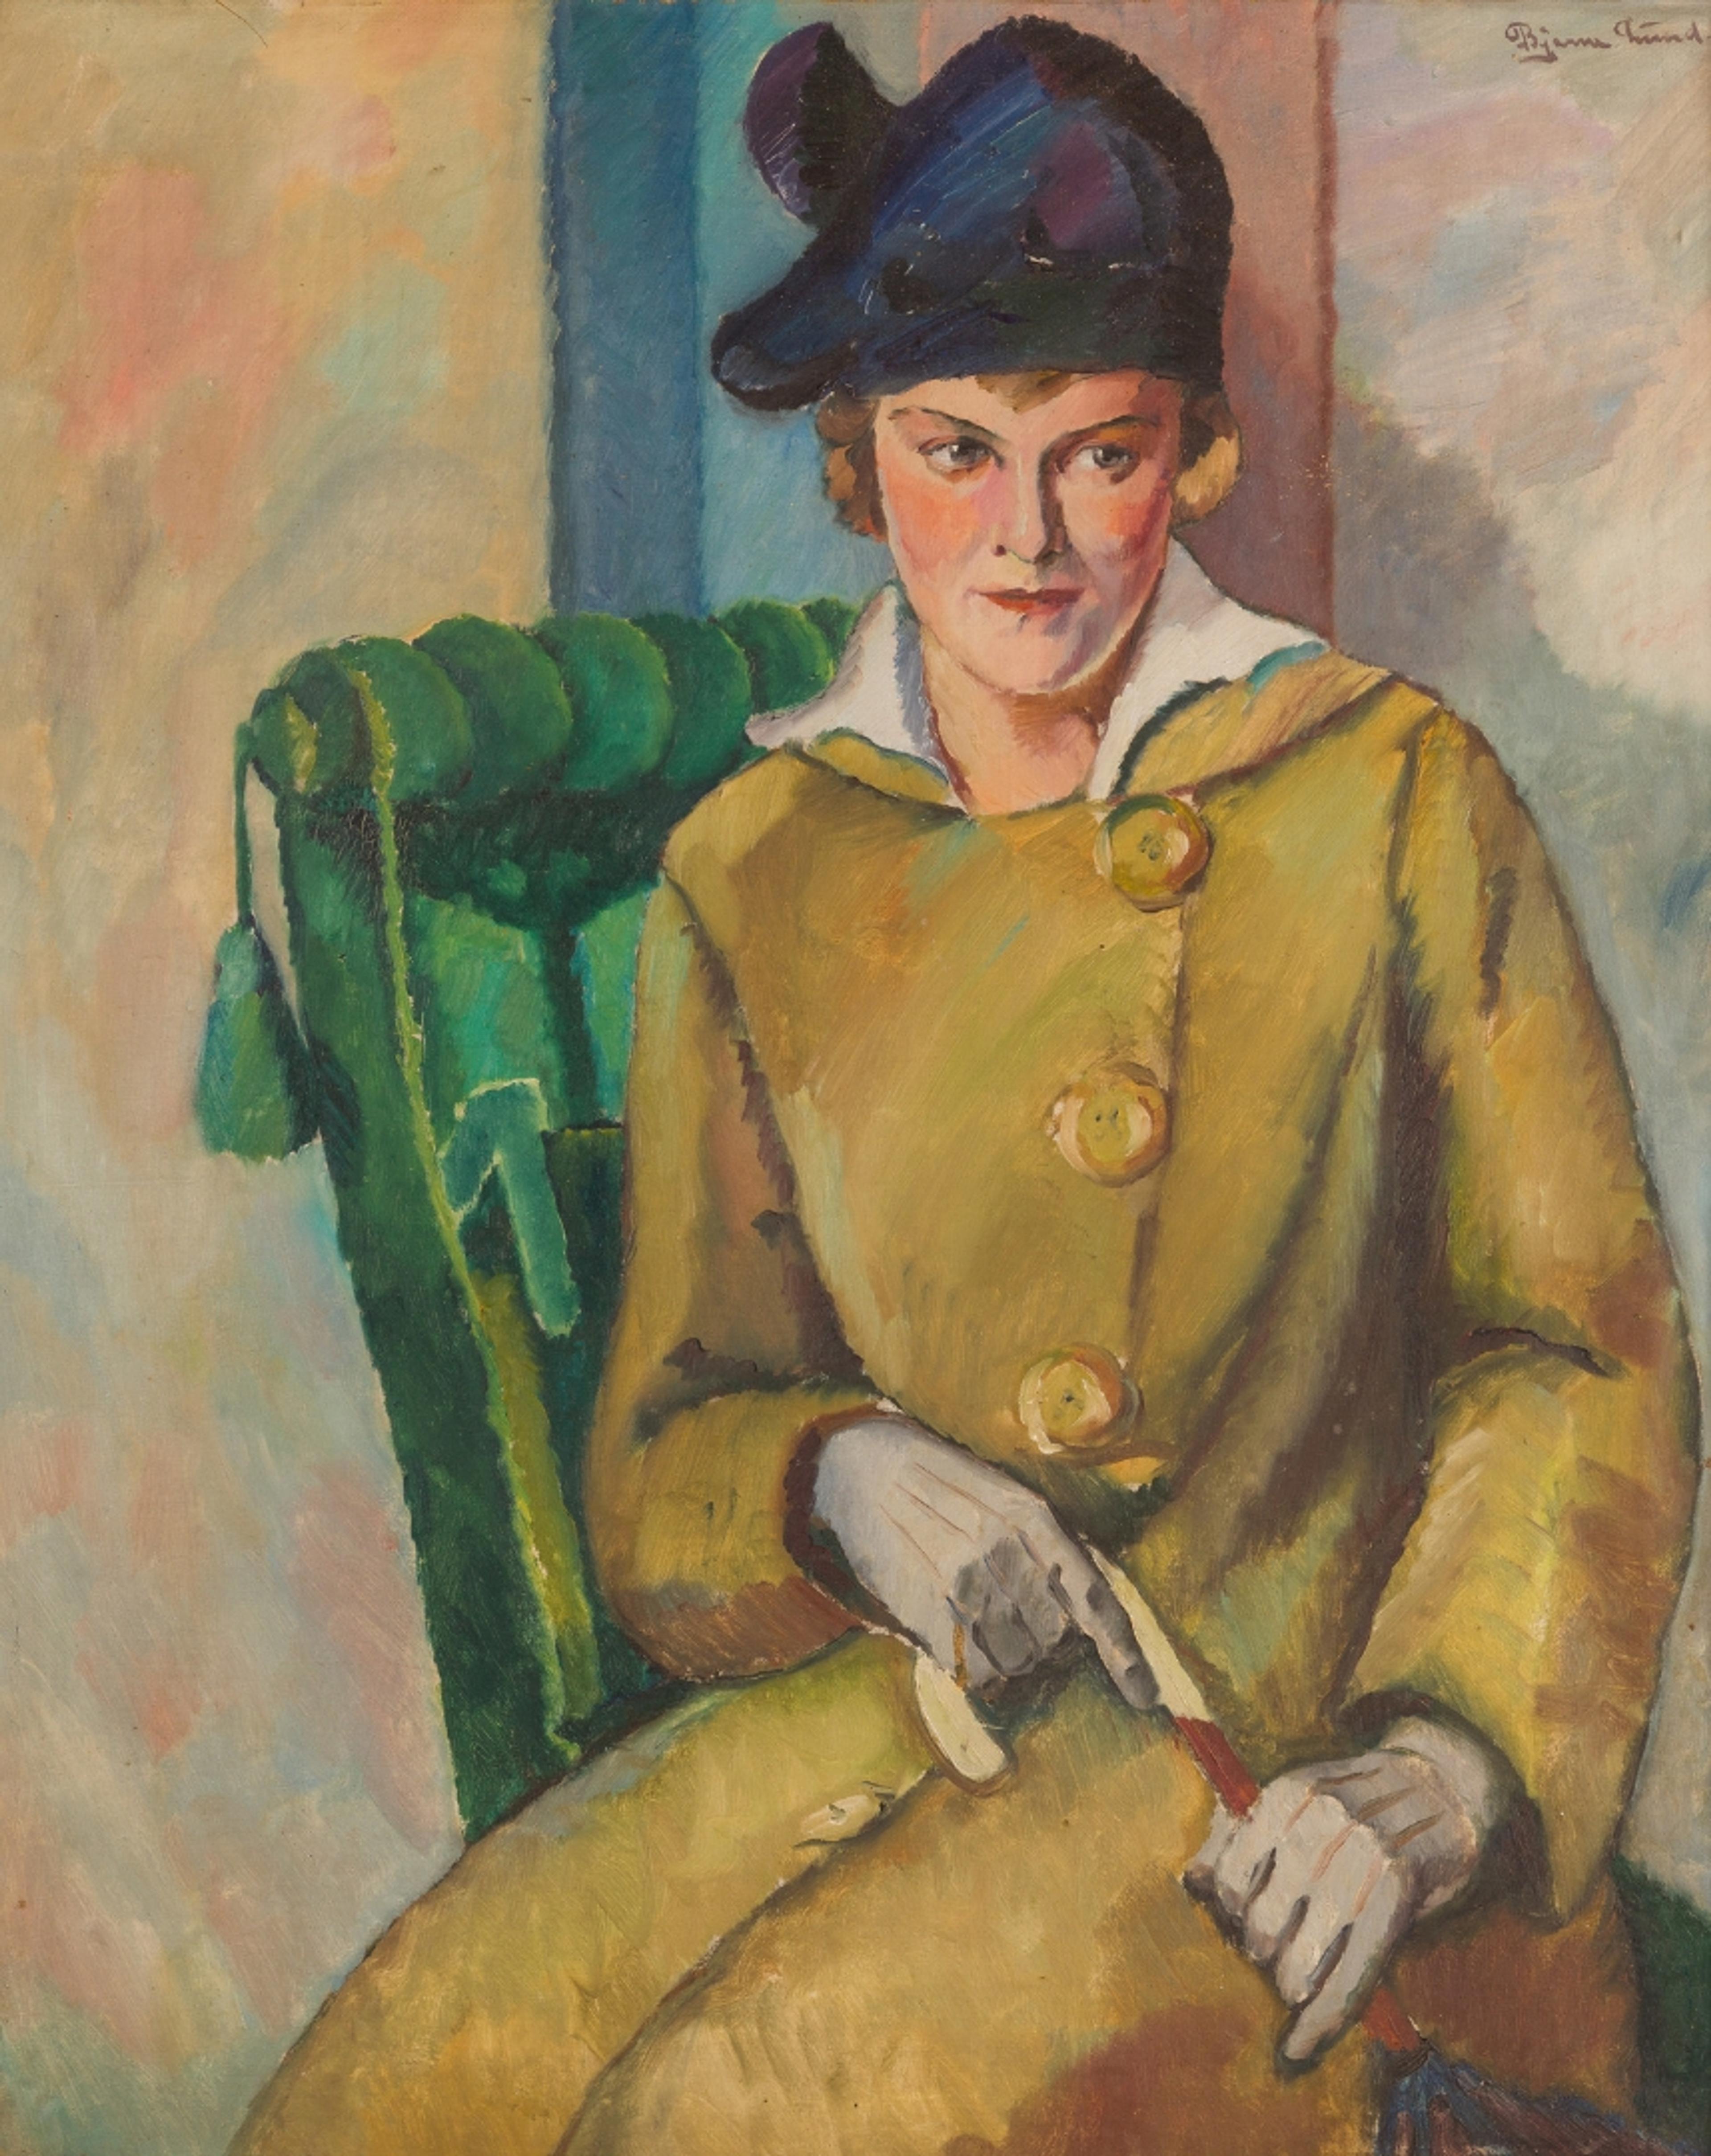 Maleri av en kvinne i gul frakk